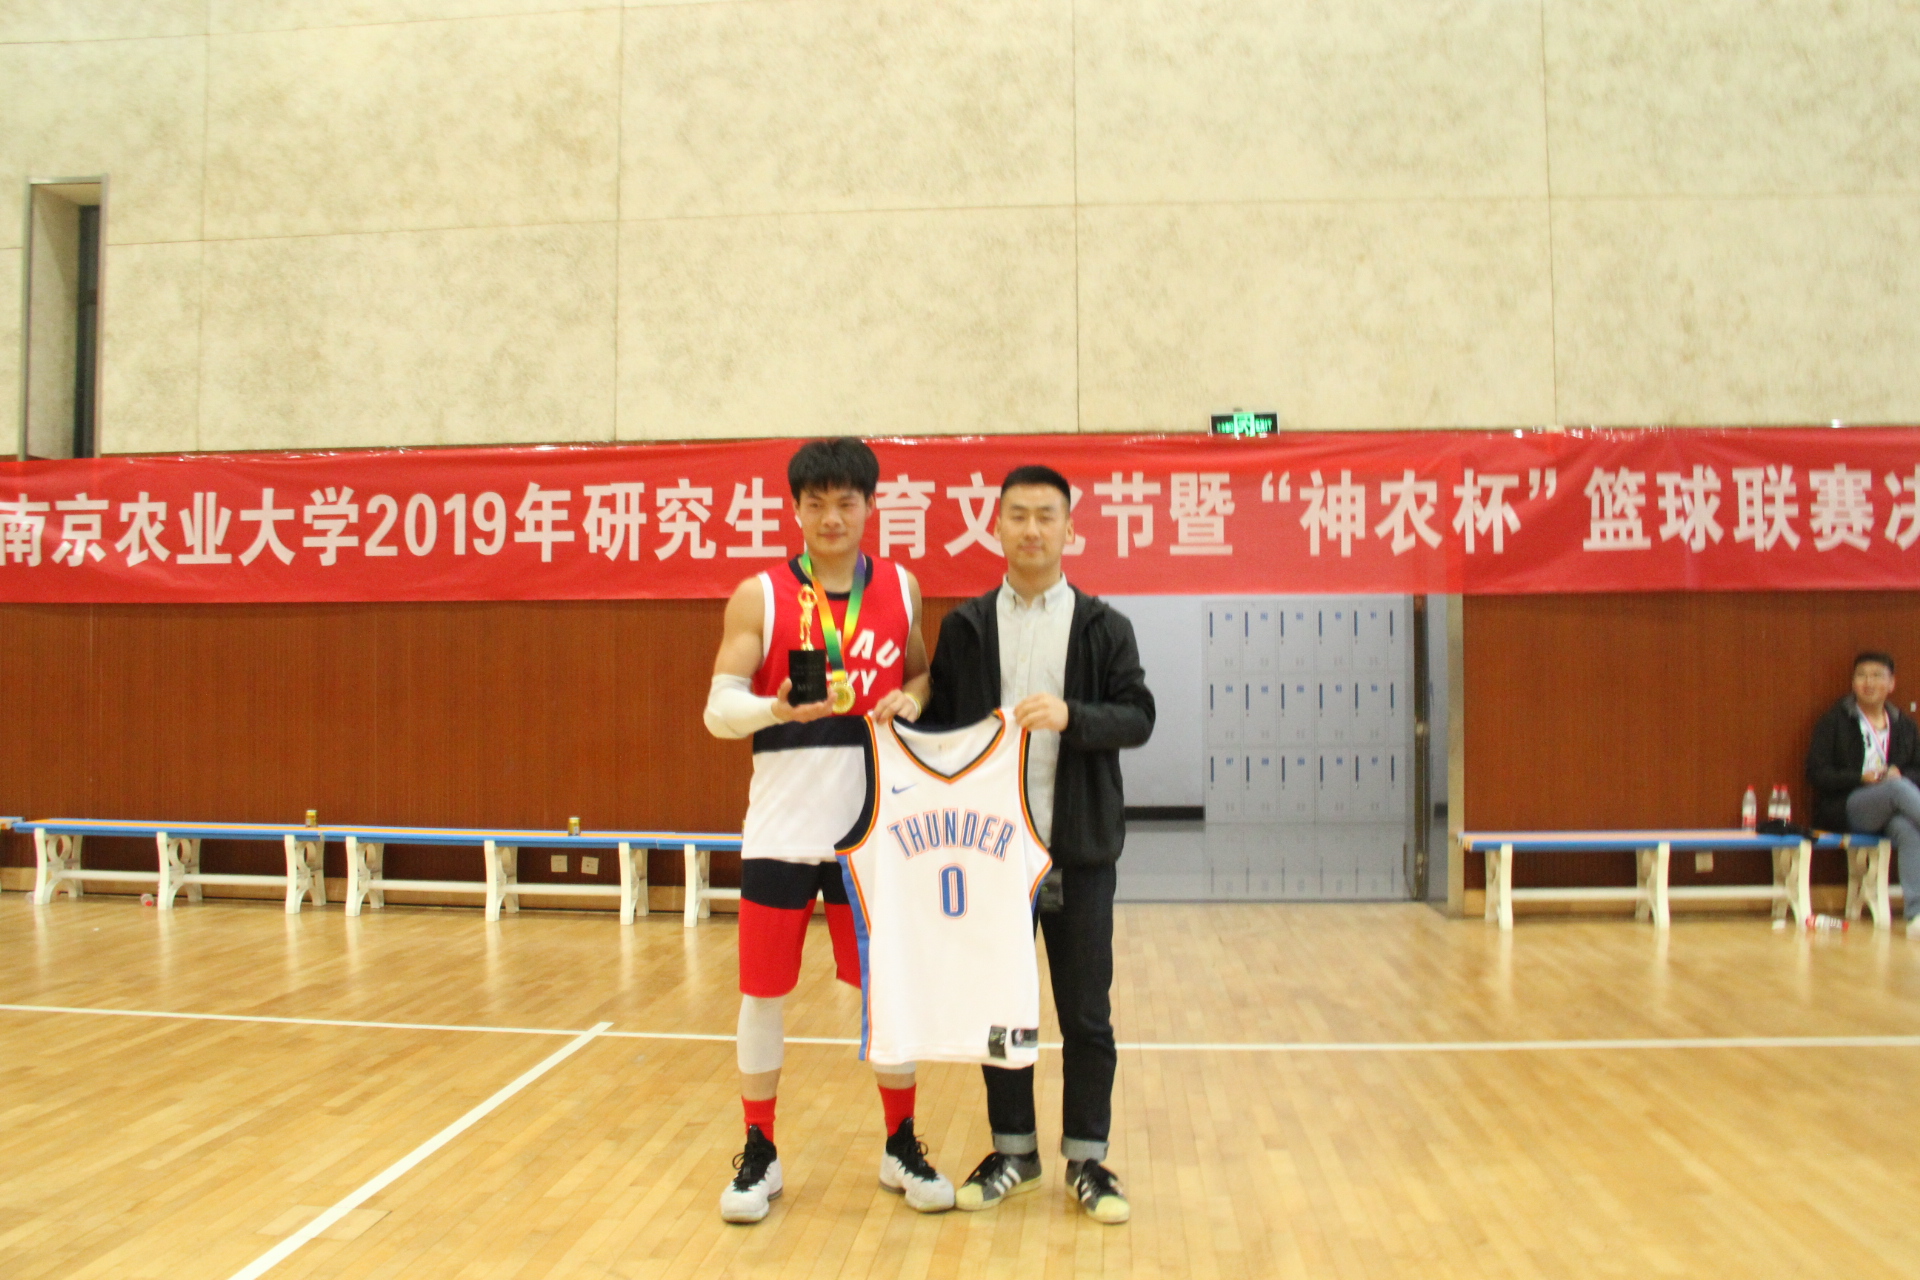 南京农业大学2019年"神农杯"研究生篮球联赛圆满结束